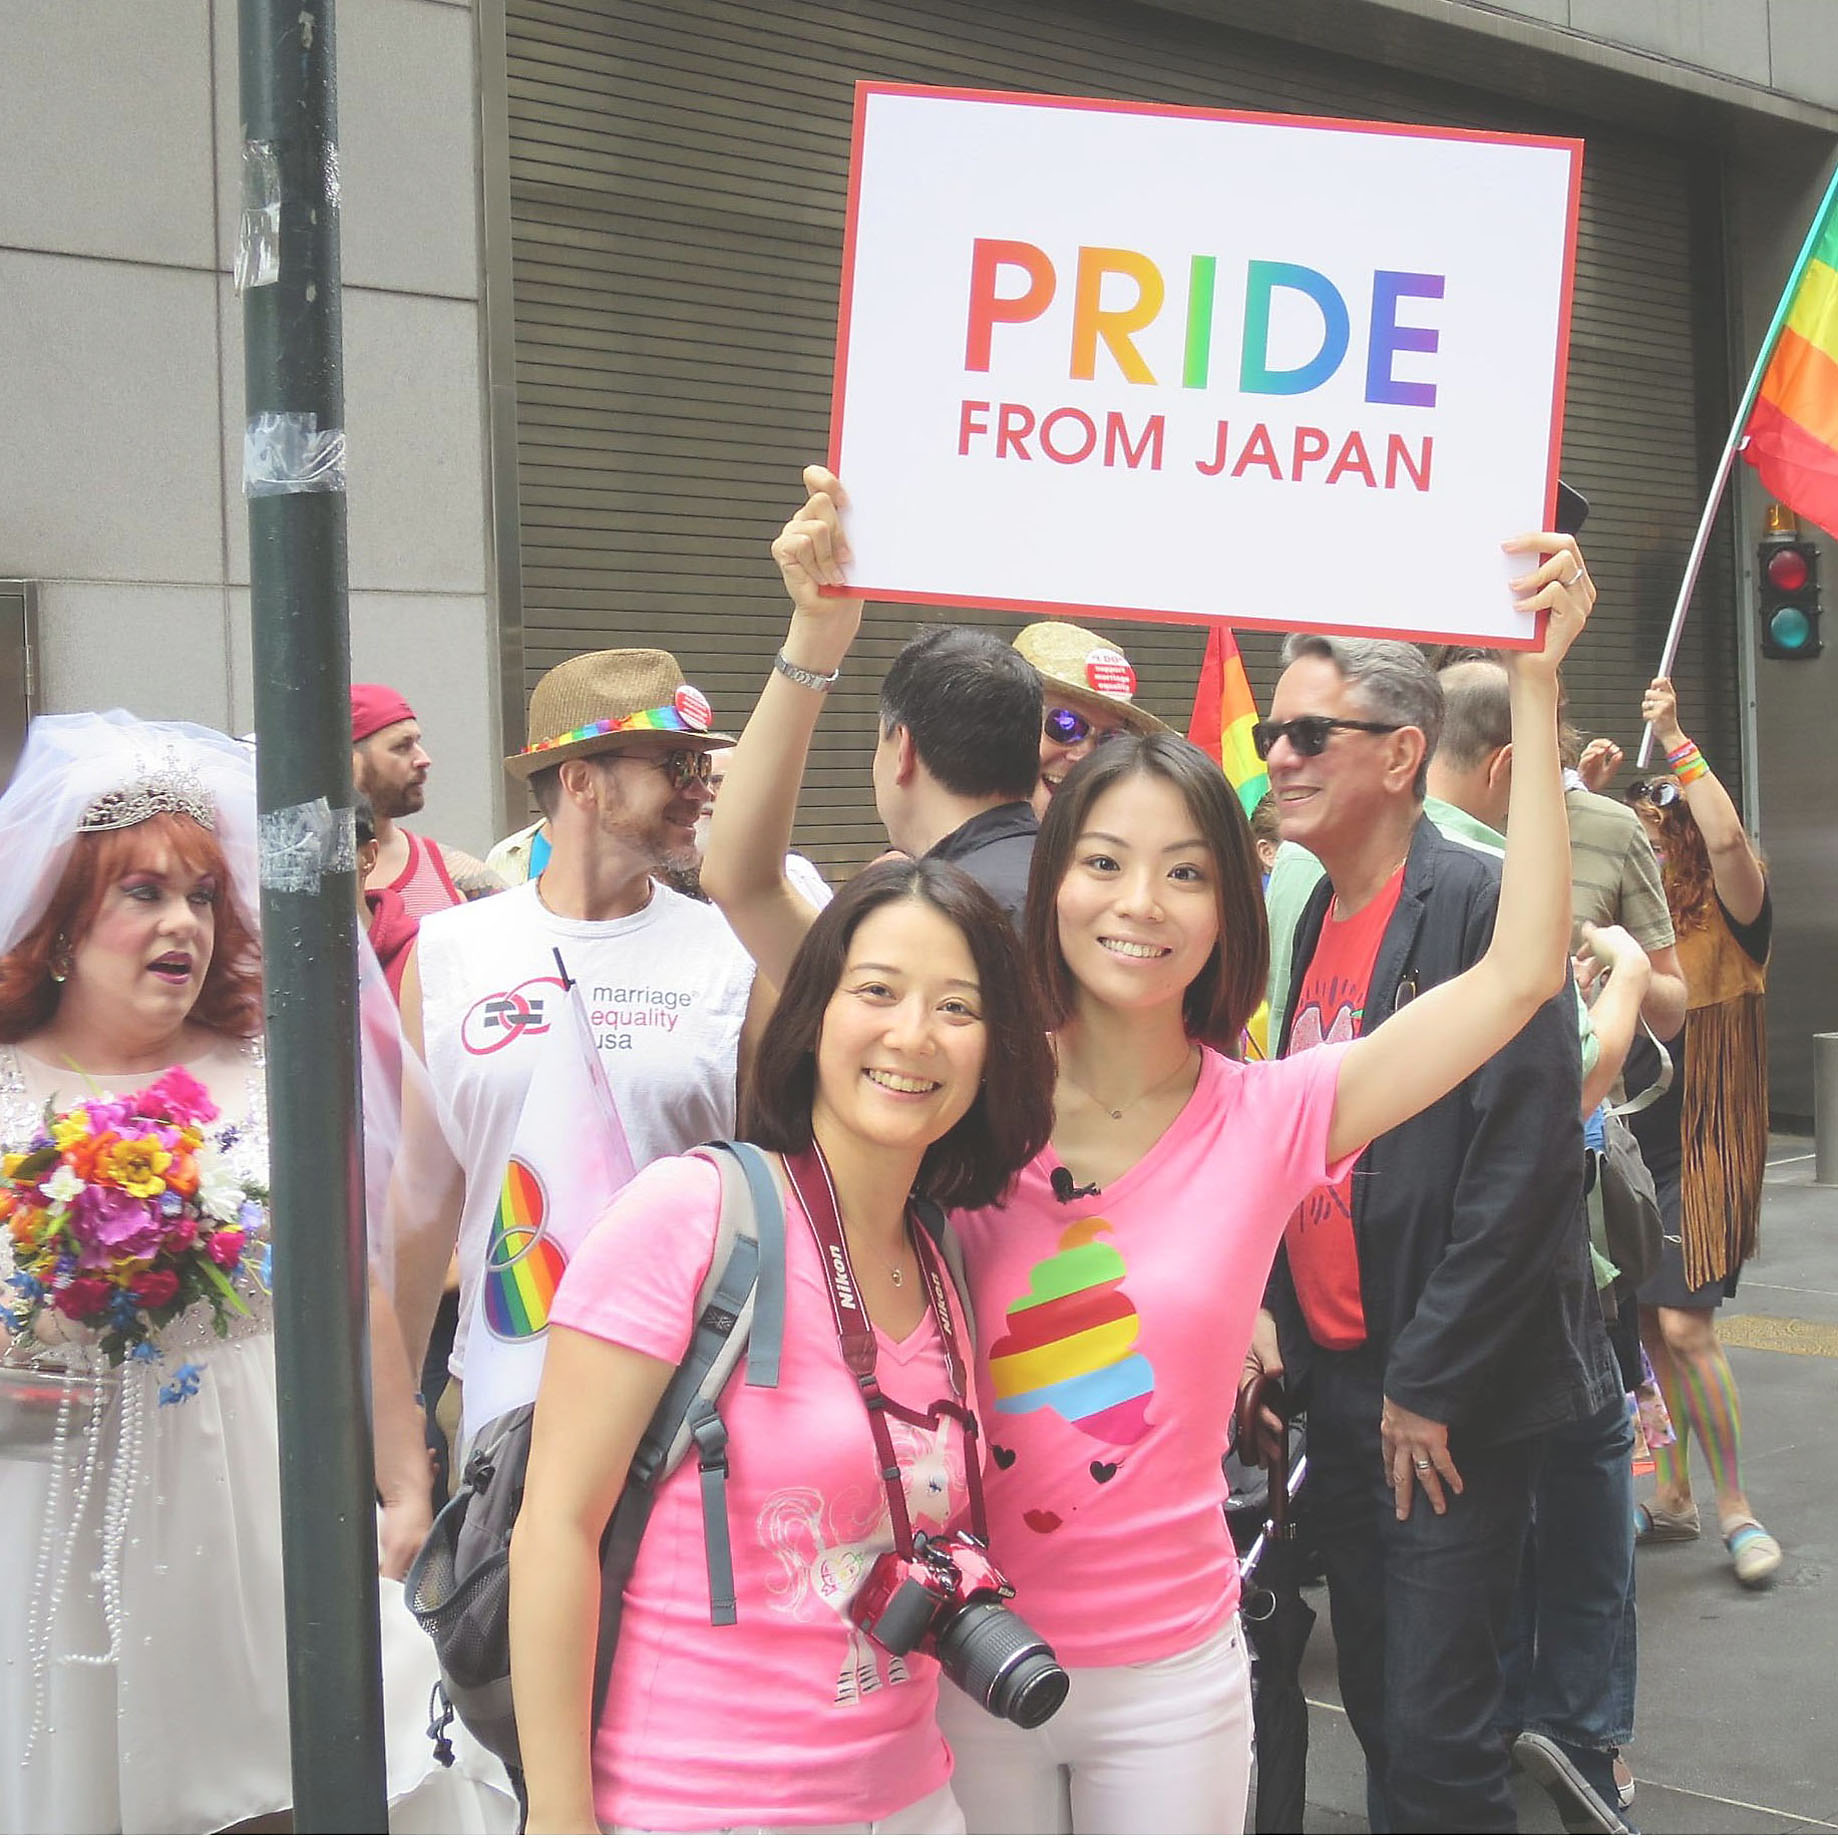 Japanese gay rights activists, academics say U.S. marriage ruling may